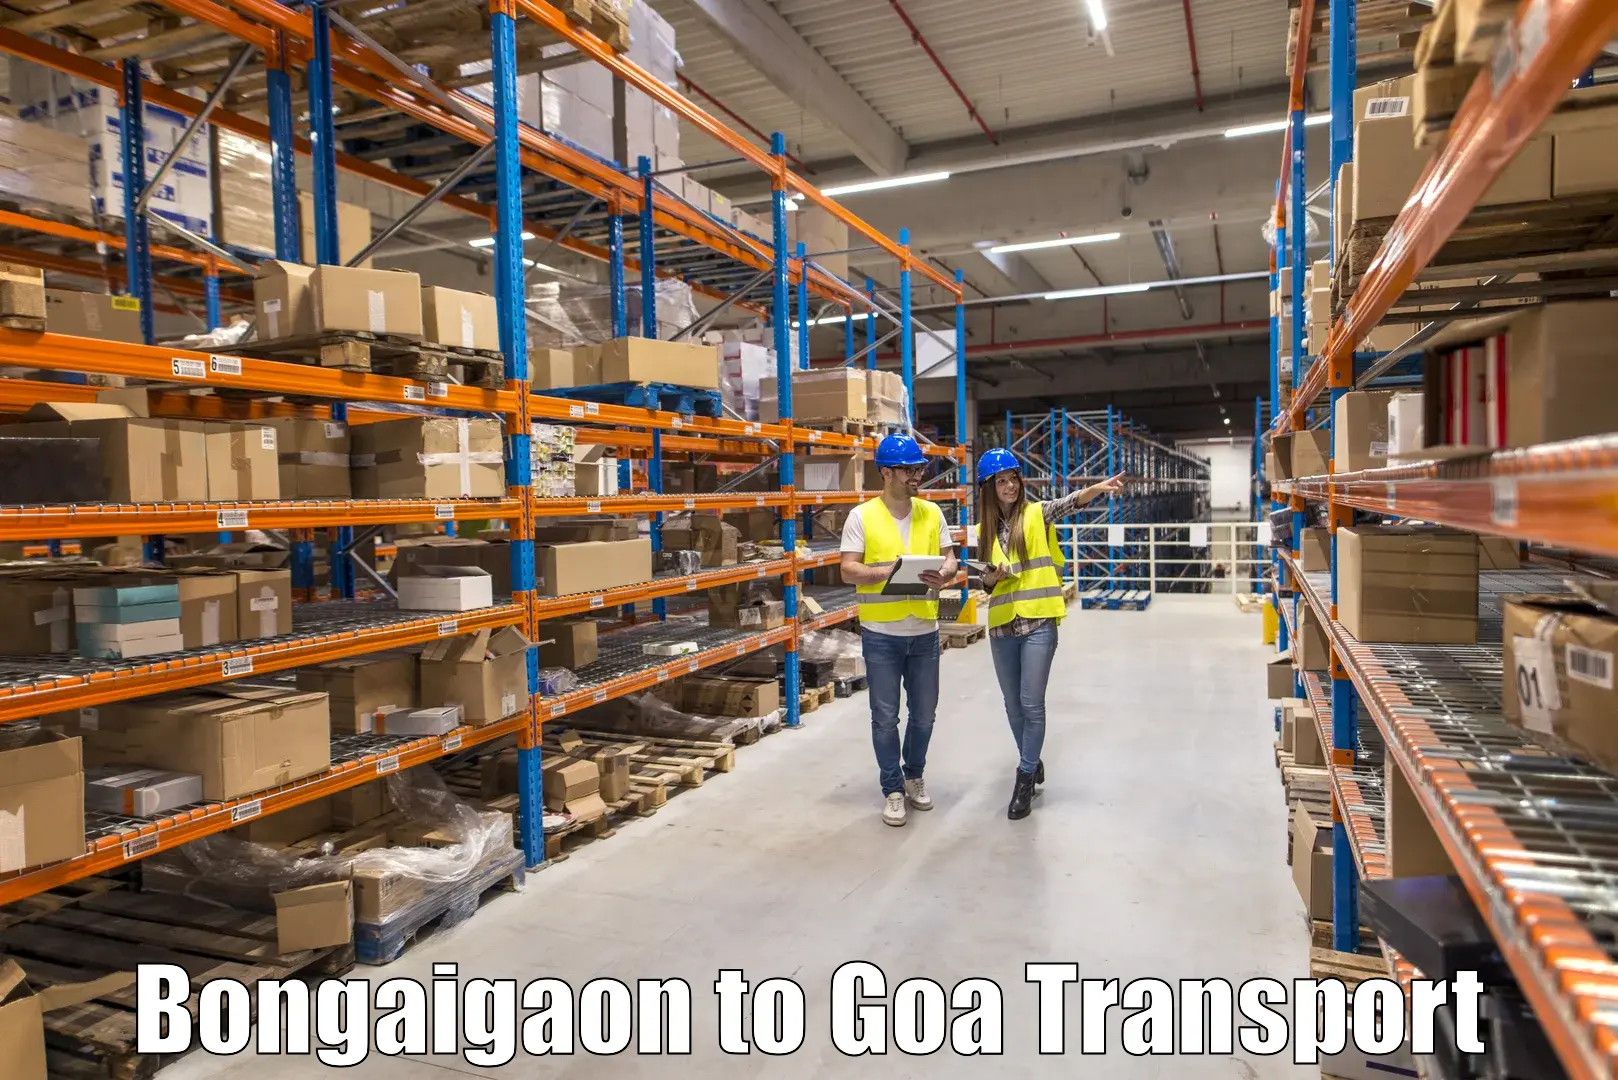 Cargo transport services Bongaigaon to Bardez